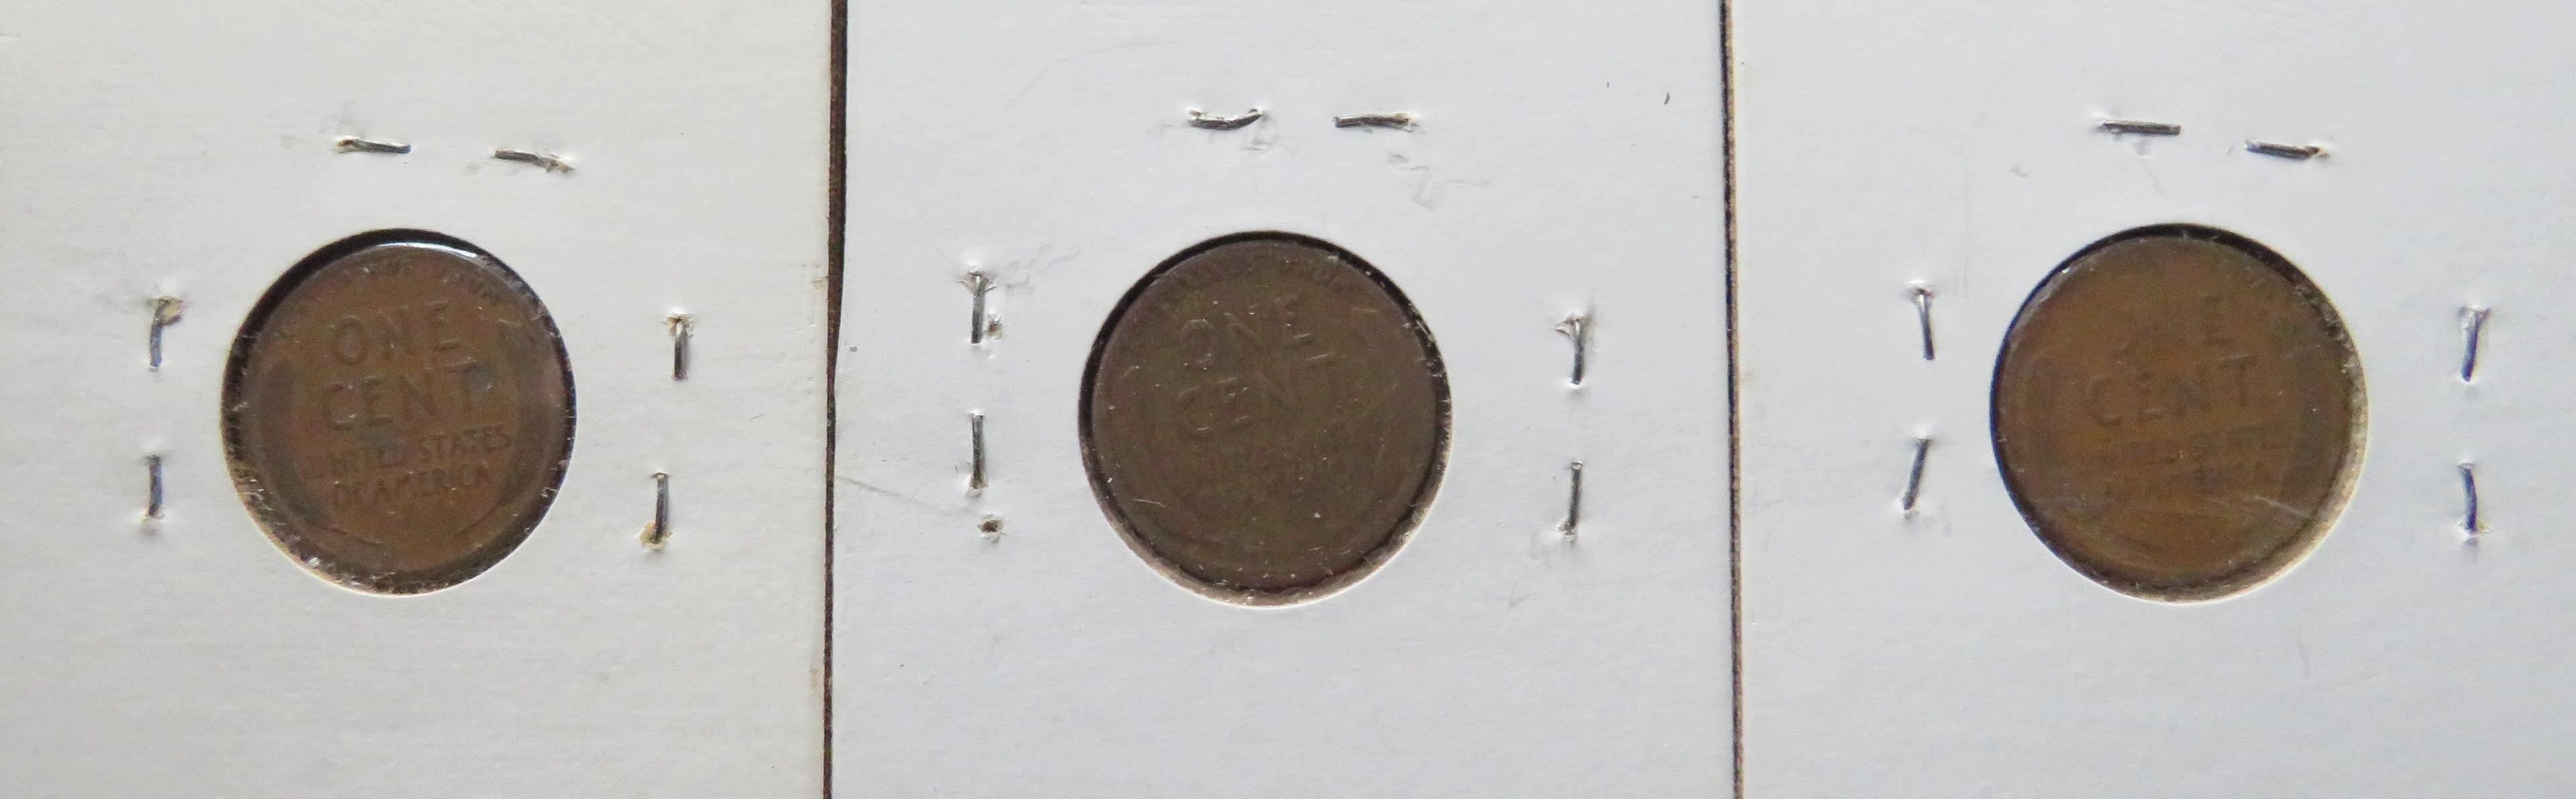 (2) 1918, 1918-D Lincoln Head Pennies